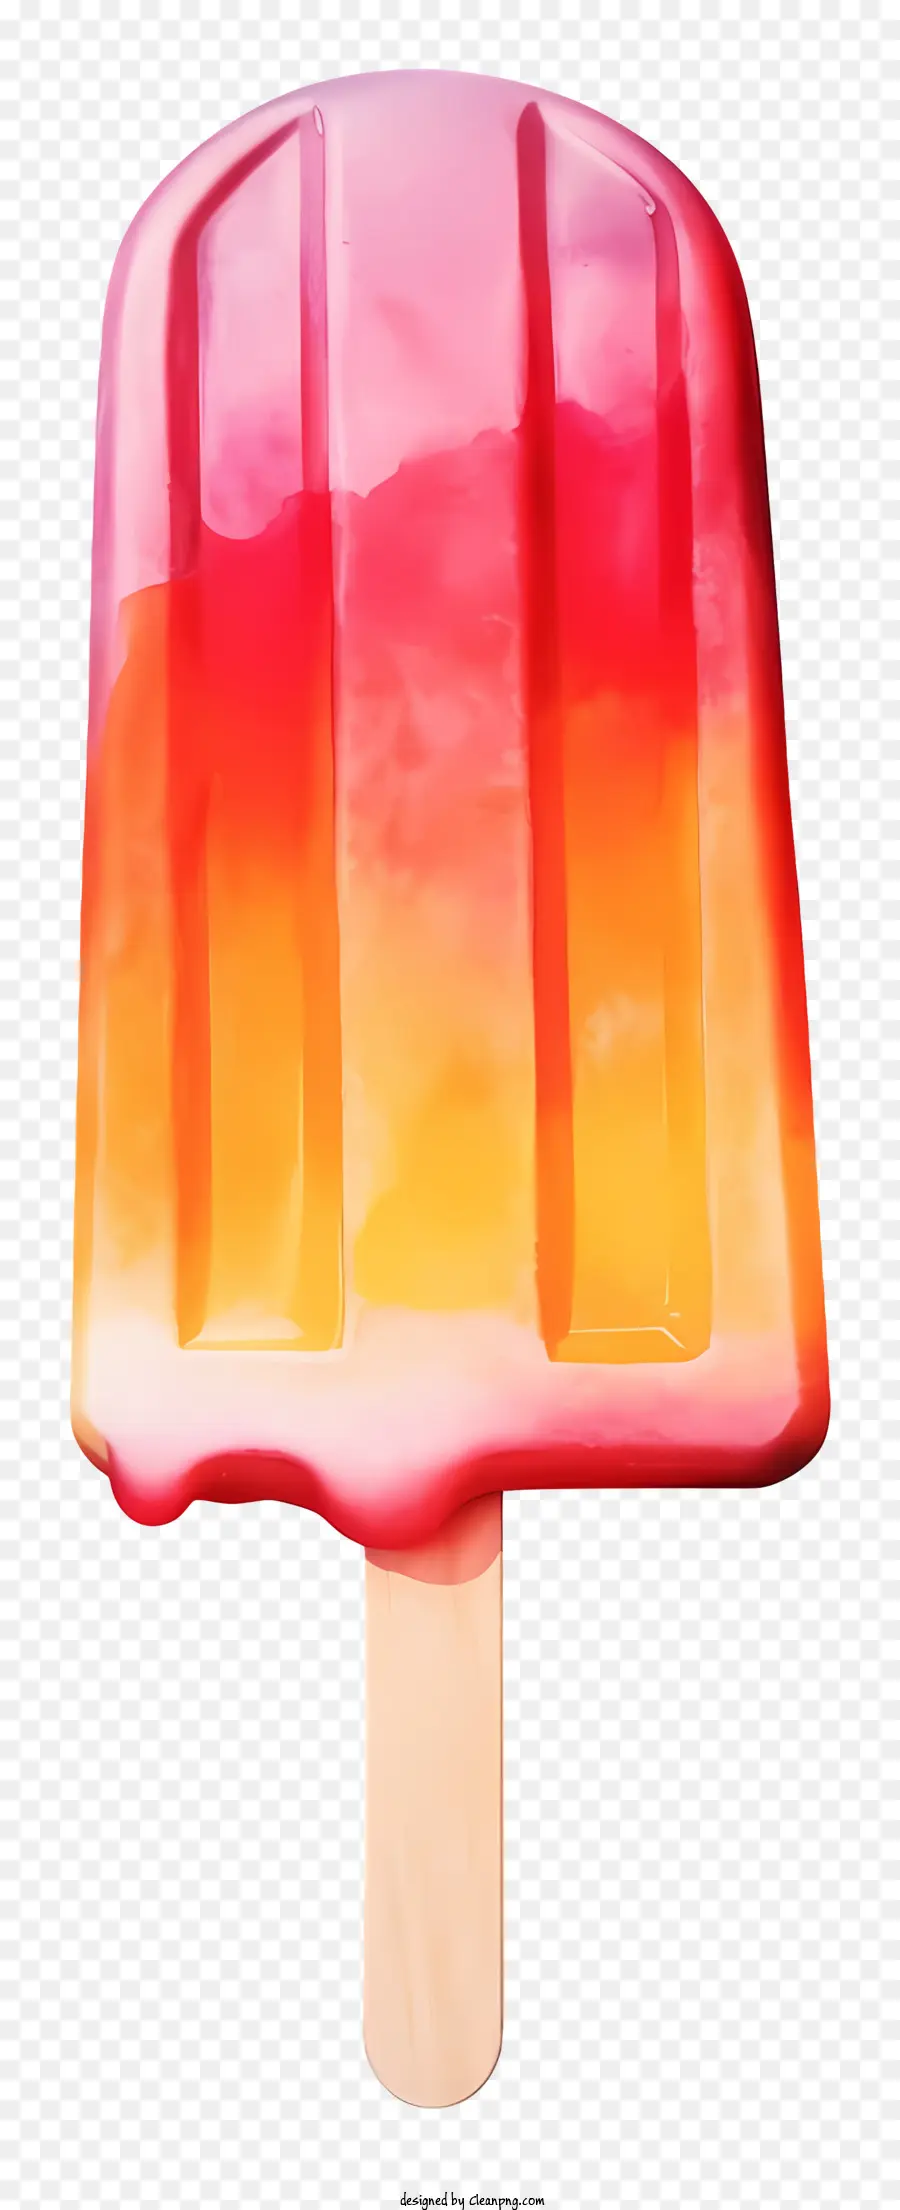 Bức tranh kem dưa hấu Popsicle vẽ tranh nghệ thuật đầy màu sắc màu cam và màu hồng sự ấm áp và nỗi nhớ - Dưa hấu đầy màu sắc trên một tác phẩm nghệ thuật gậy